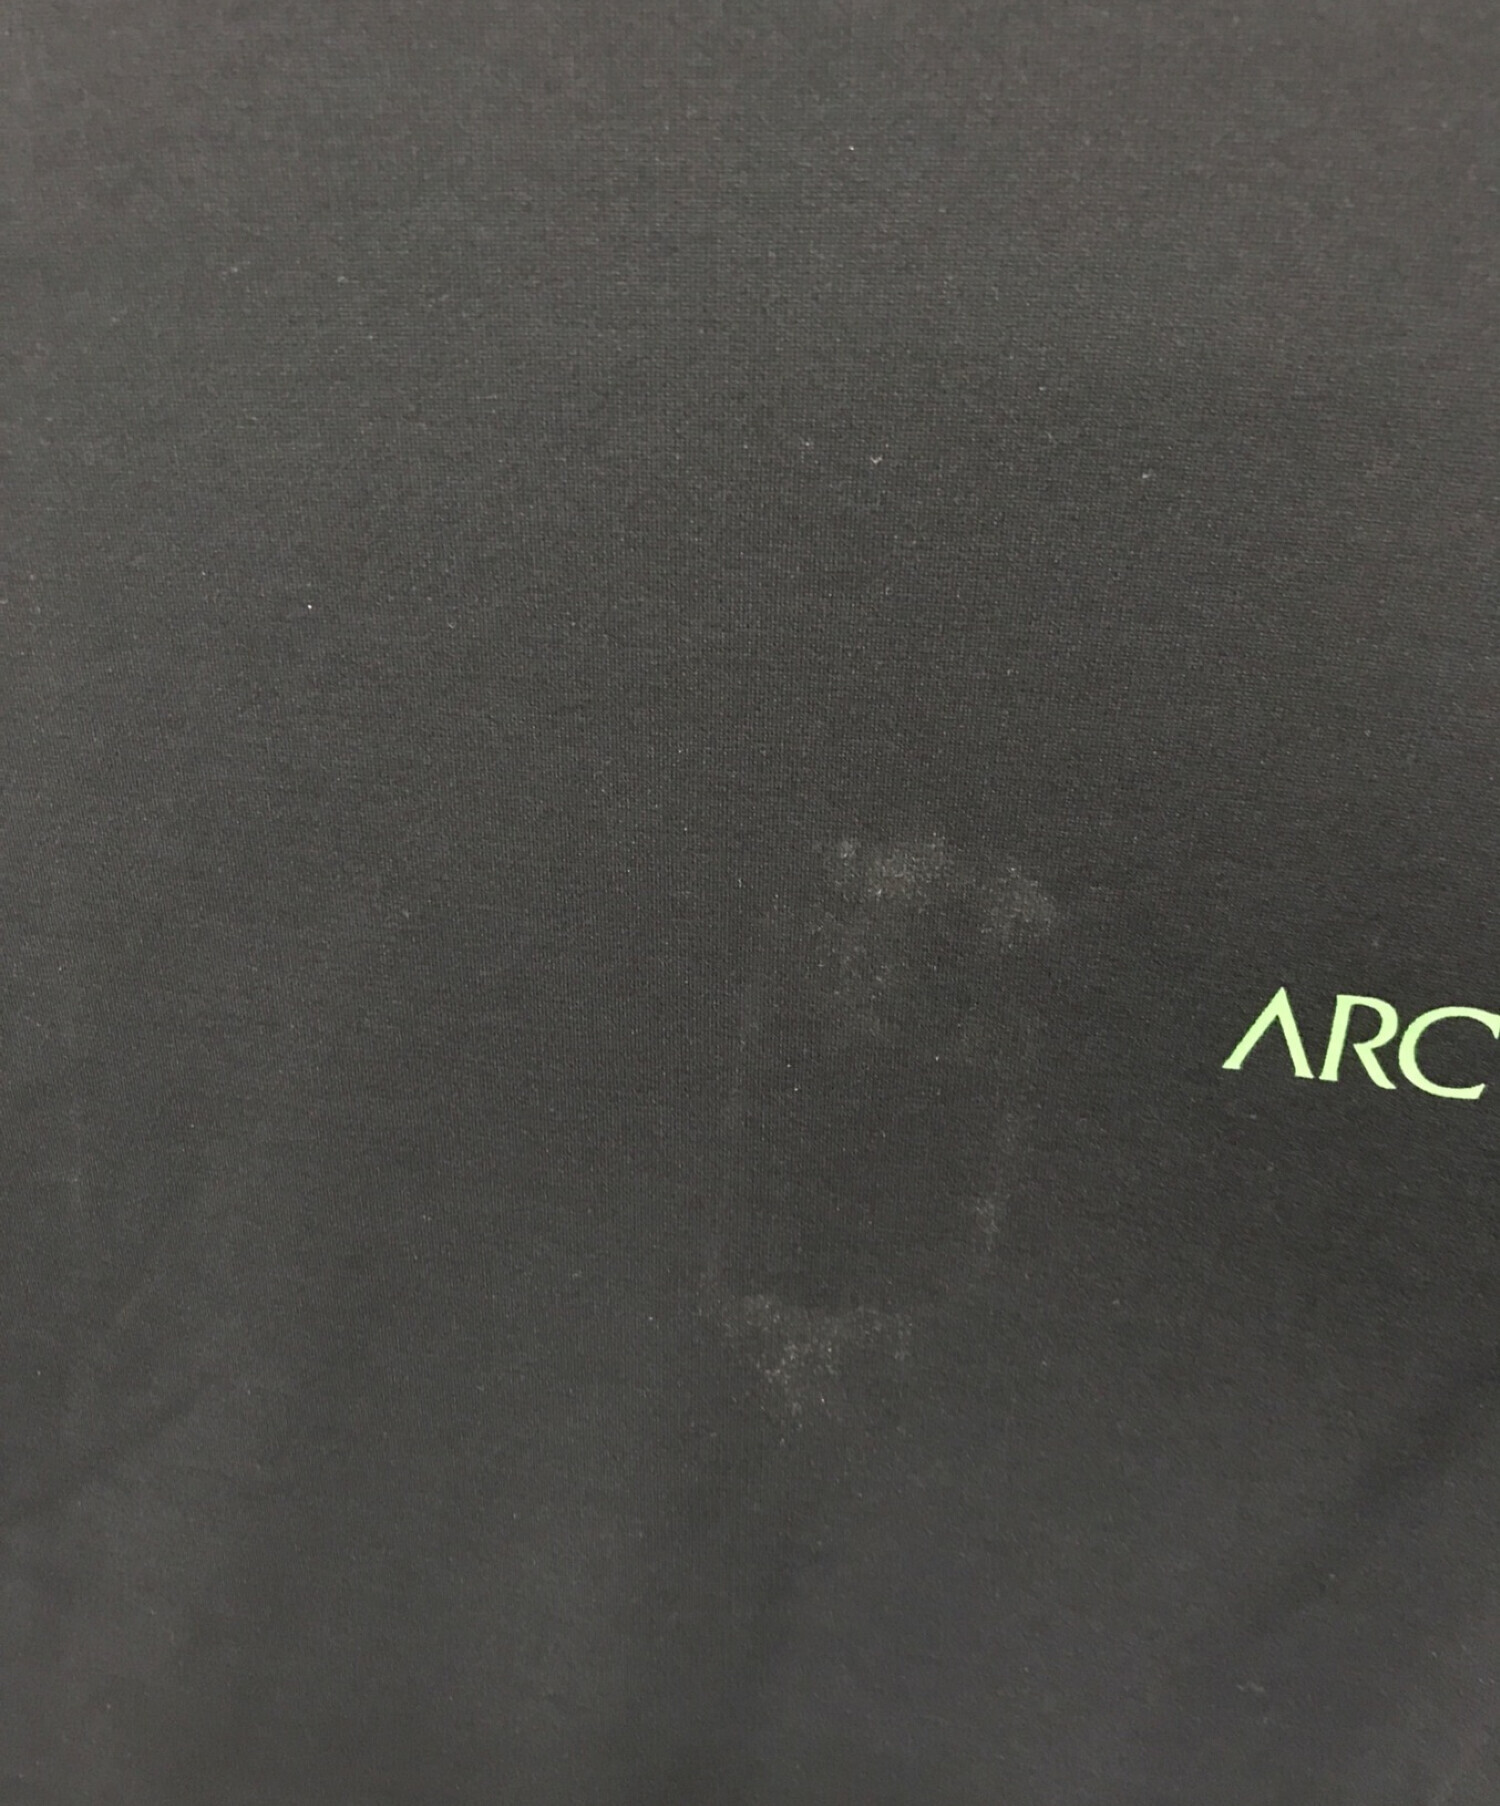 ARC’TERYX アークテリクス コパル バード ロングスリーブ Tシャツ S